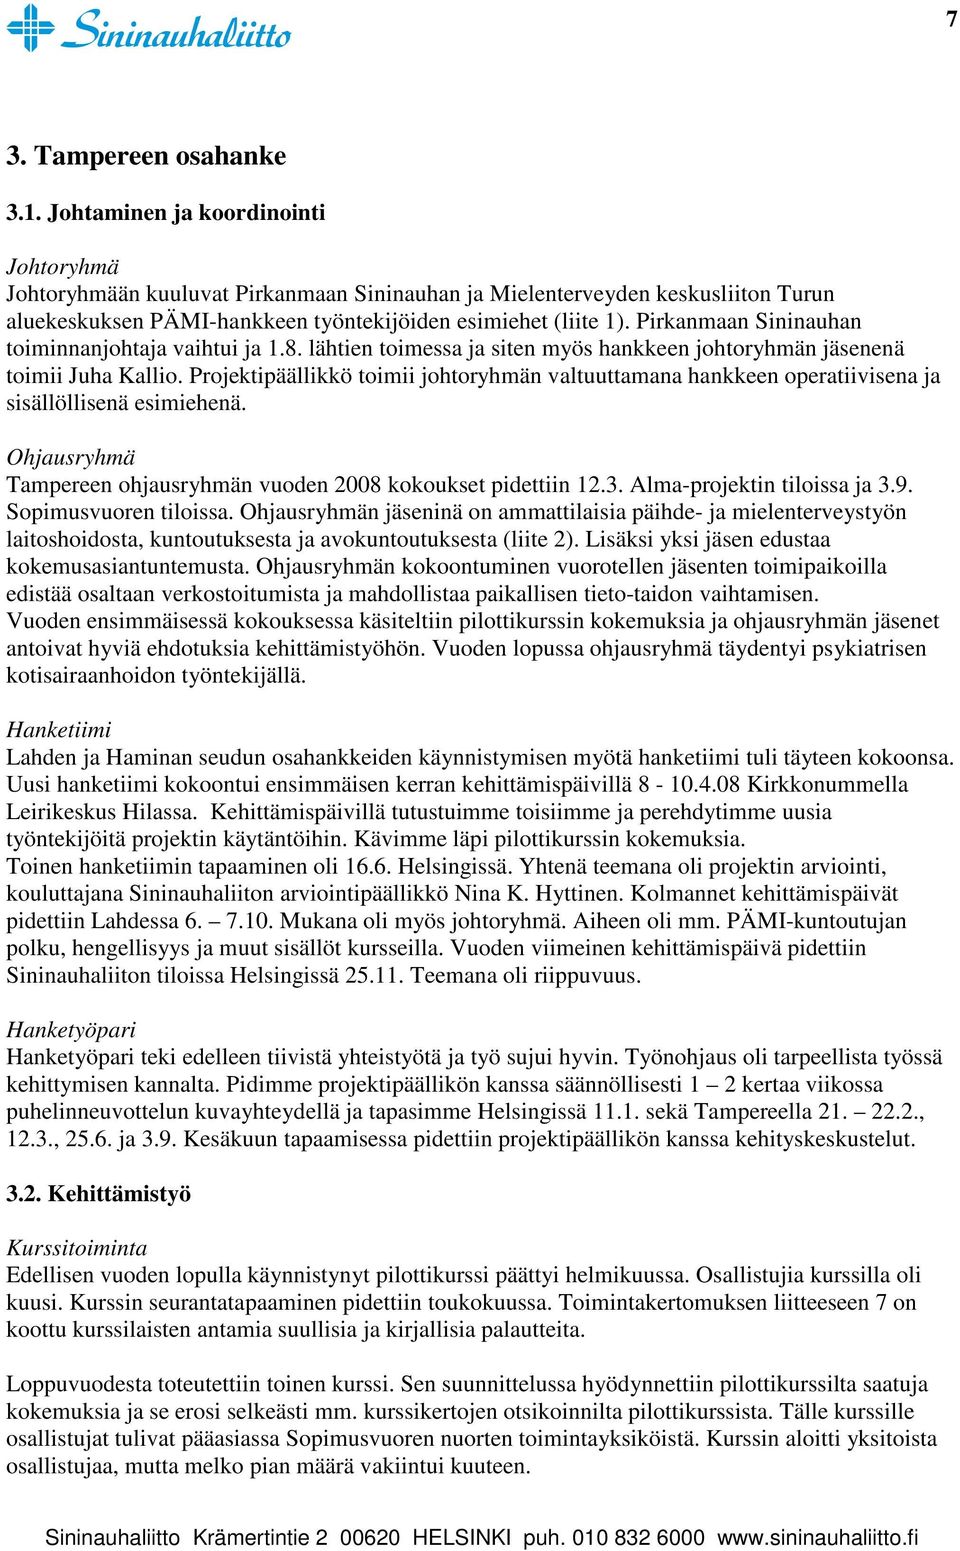 Pirkanmaan Sininauhan toiminnanjohtaja vaihtui ja 1.8. lähtien toimessa ja siten myös hankkeen johtoryhmän jäsenenä toimii Juha Kallio.